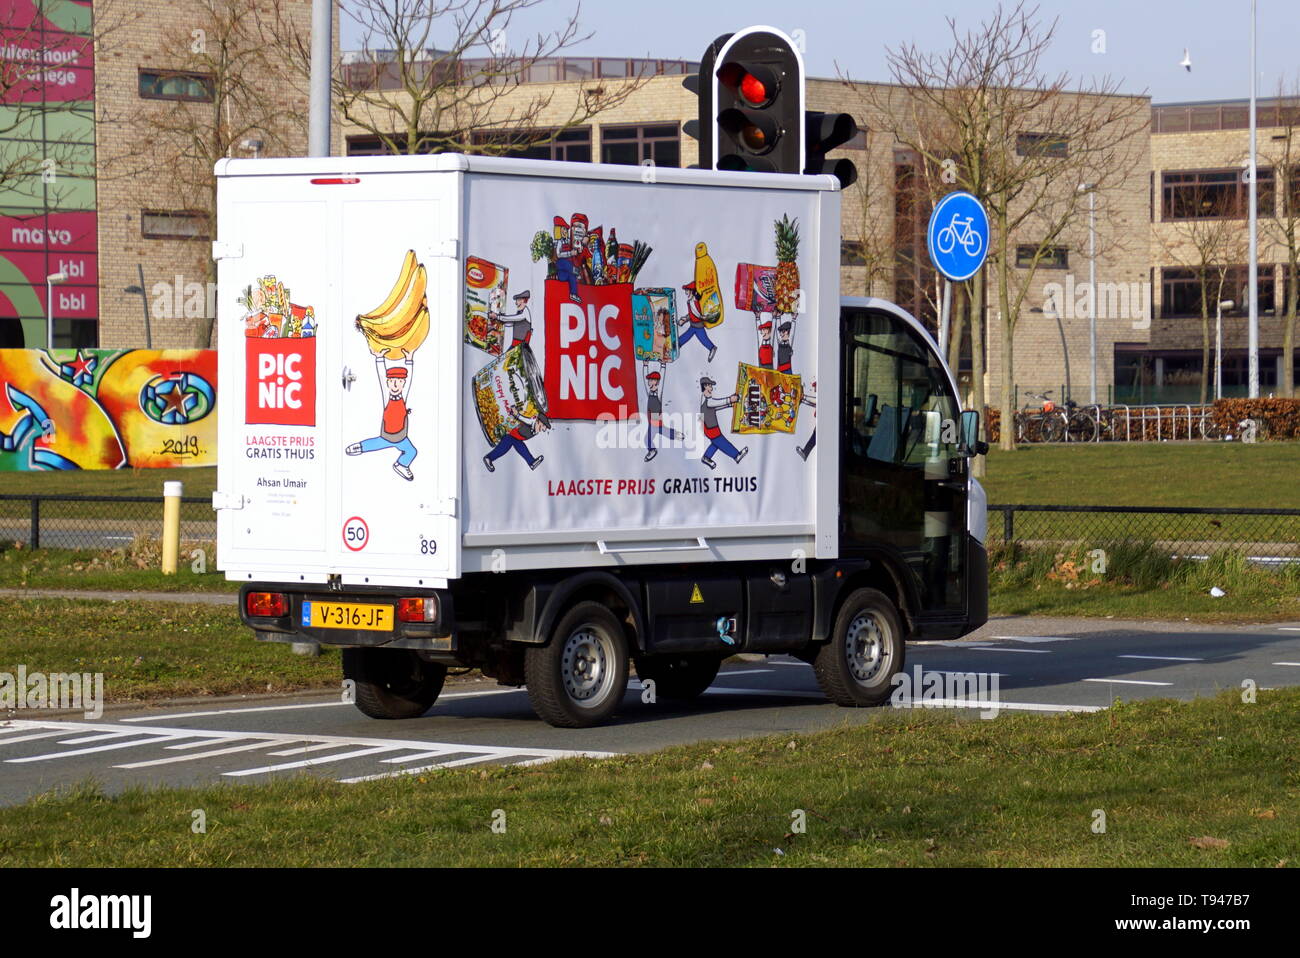 Almere Buiten, Niederlande - Februar 18, 2019: Elektrische Lieferung Fahrzeug E-Worker von Picknick, einem Niederländischen online Supermarkt. Stockfoto